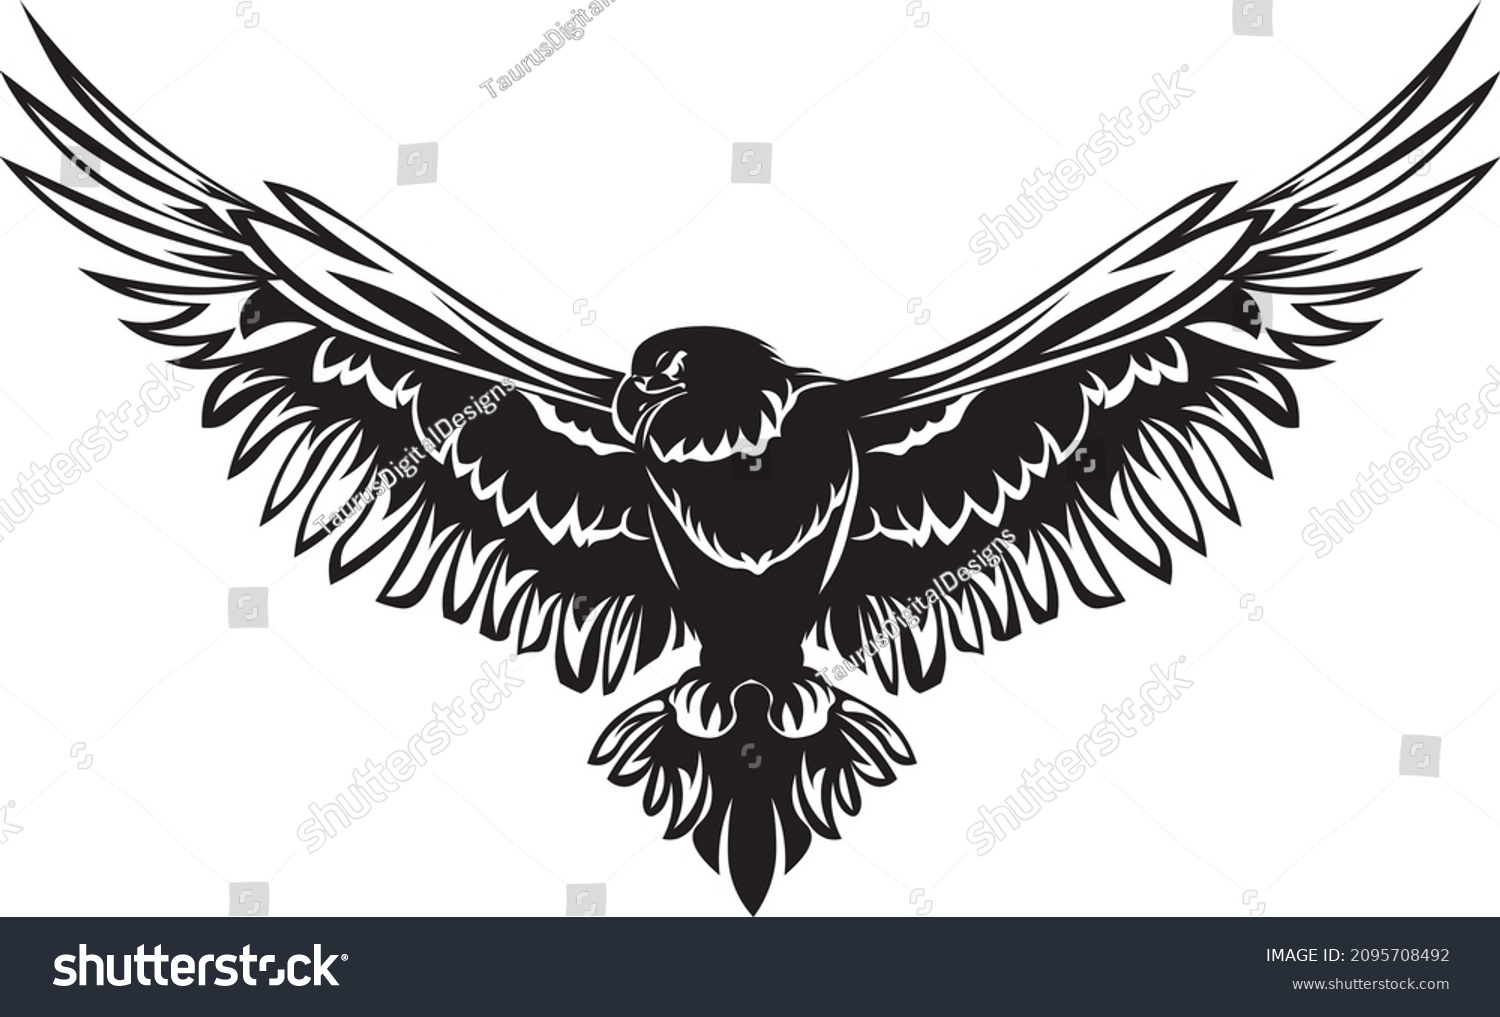 SVG of Flying eagle SVG design for t-shirts, logos, prints, wall art svg